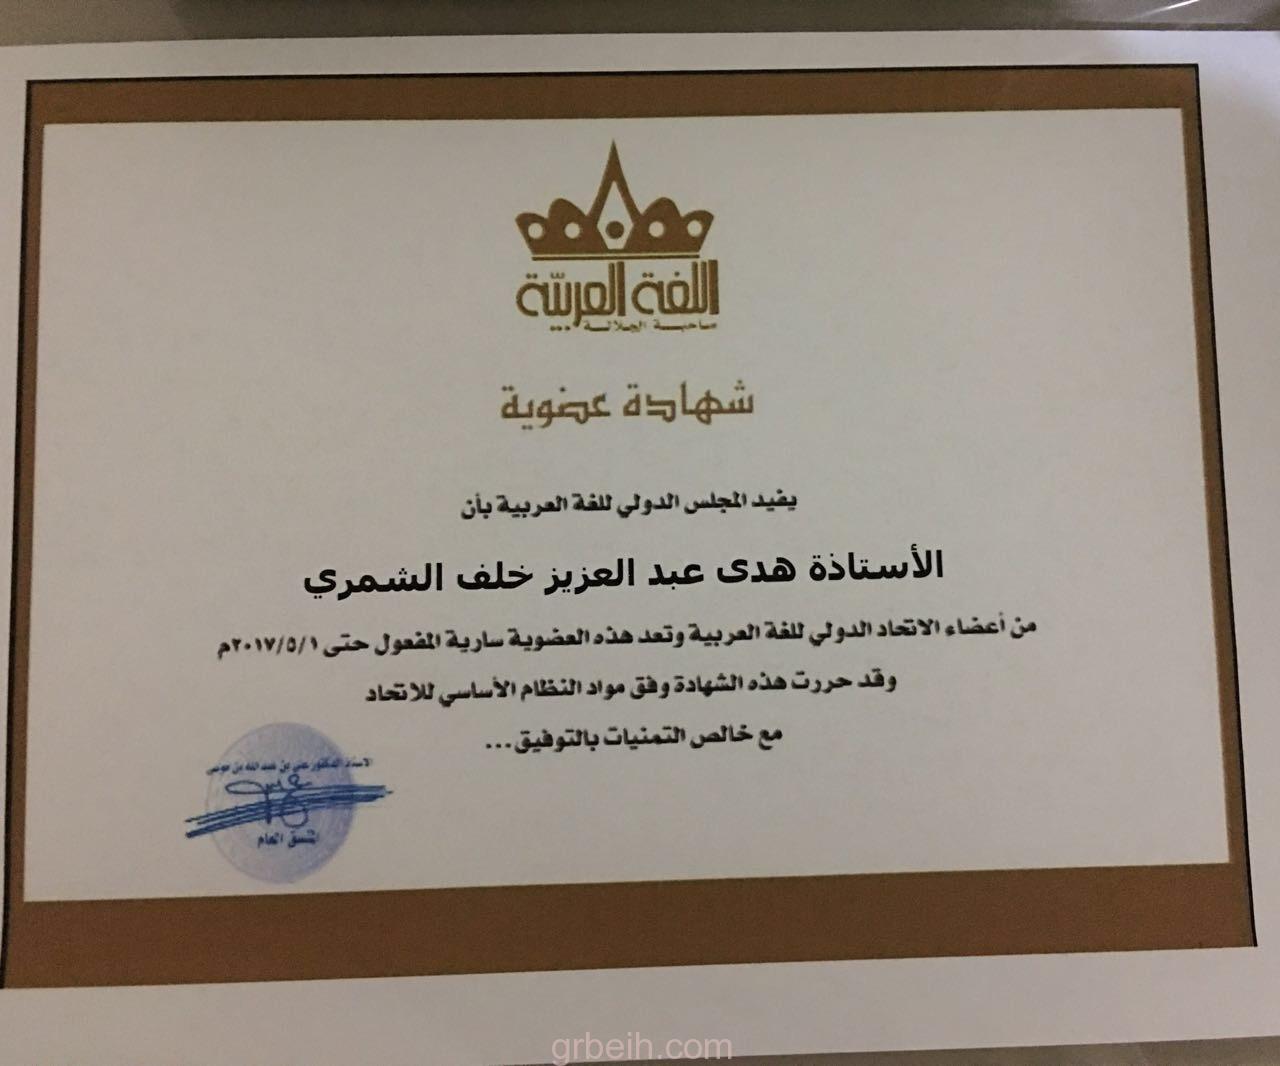 الأستاذة هدي عبدالعزيز الشمري تحصل على عضوية المؤتمر الدولي للغة العربية بدبي